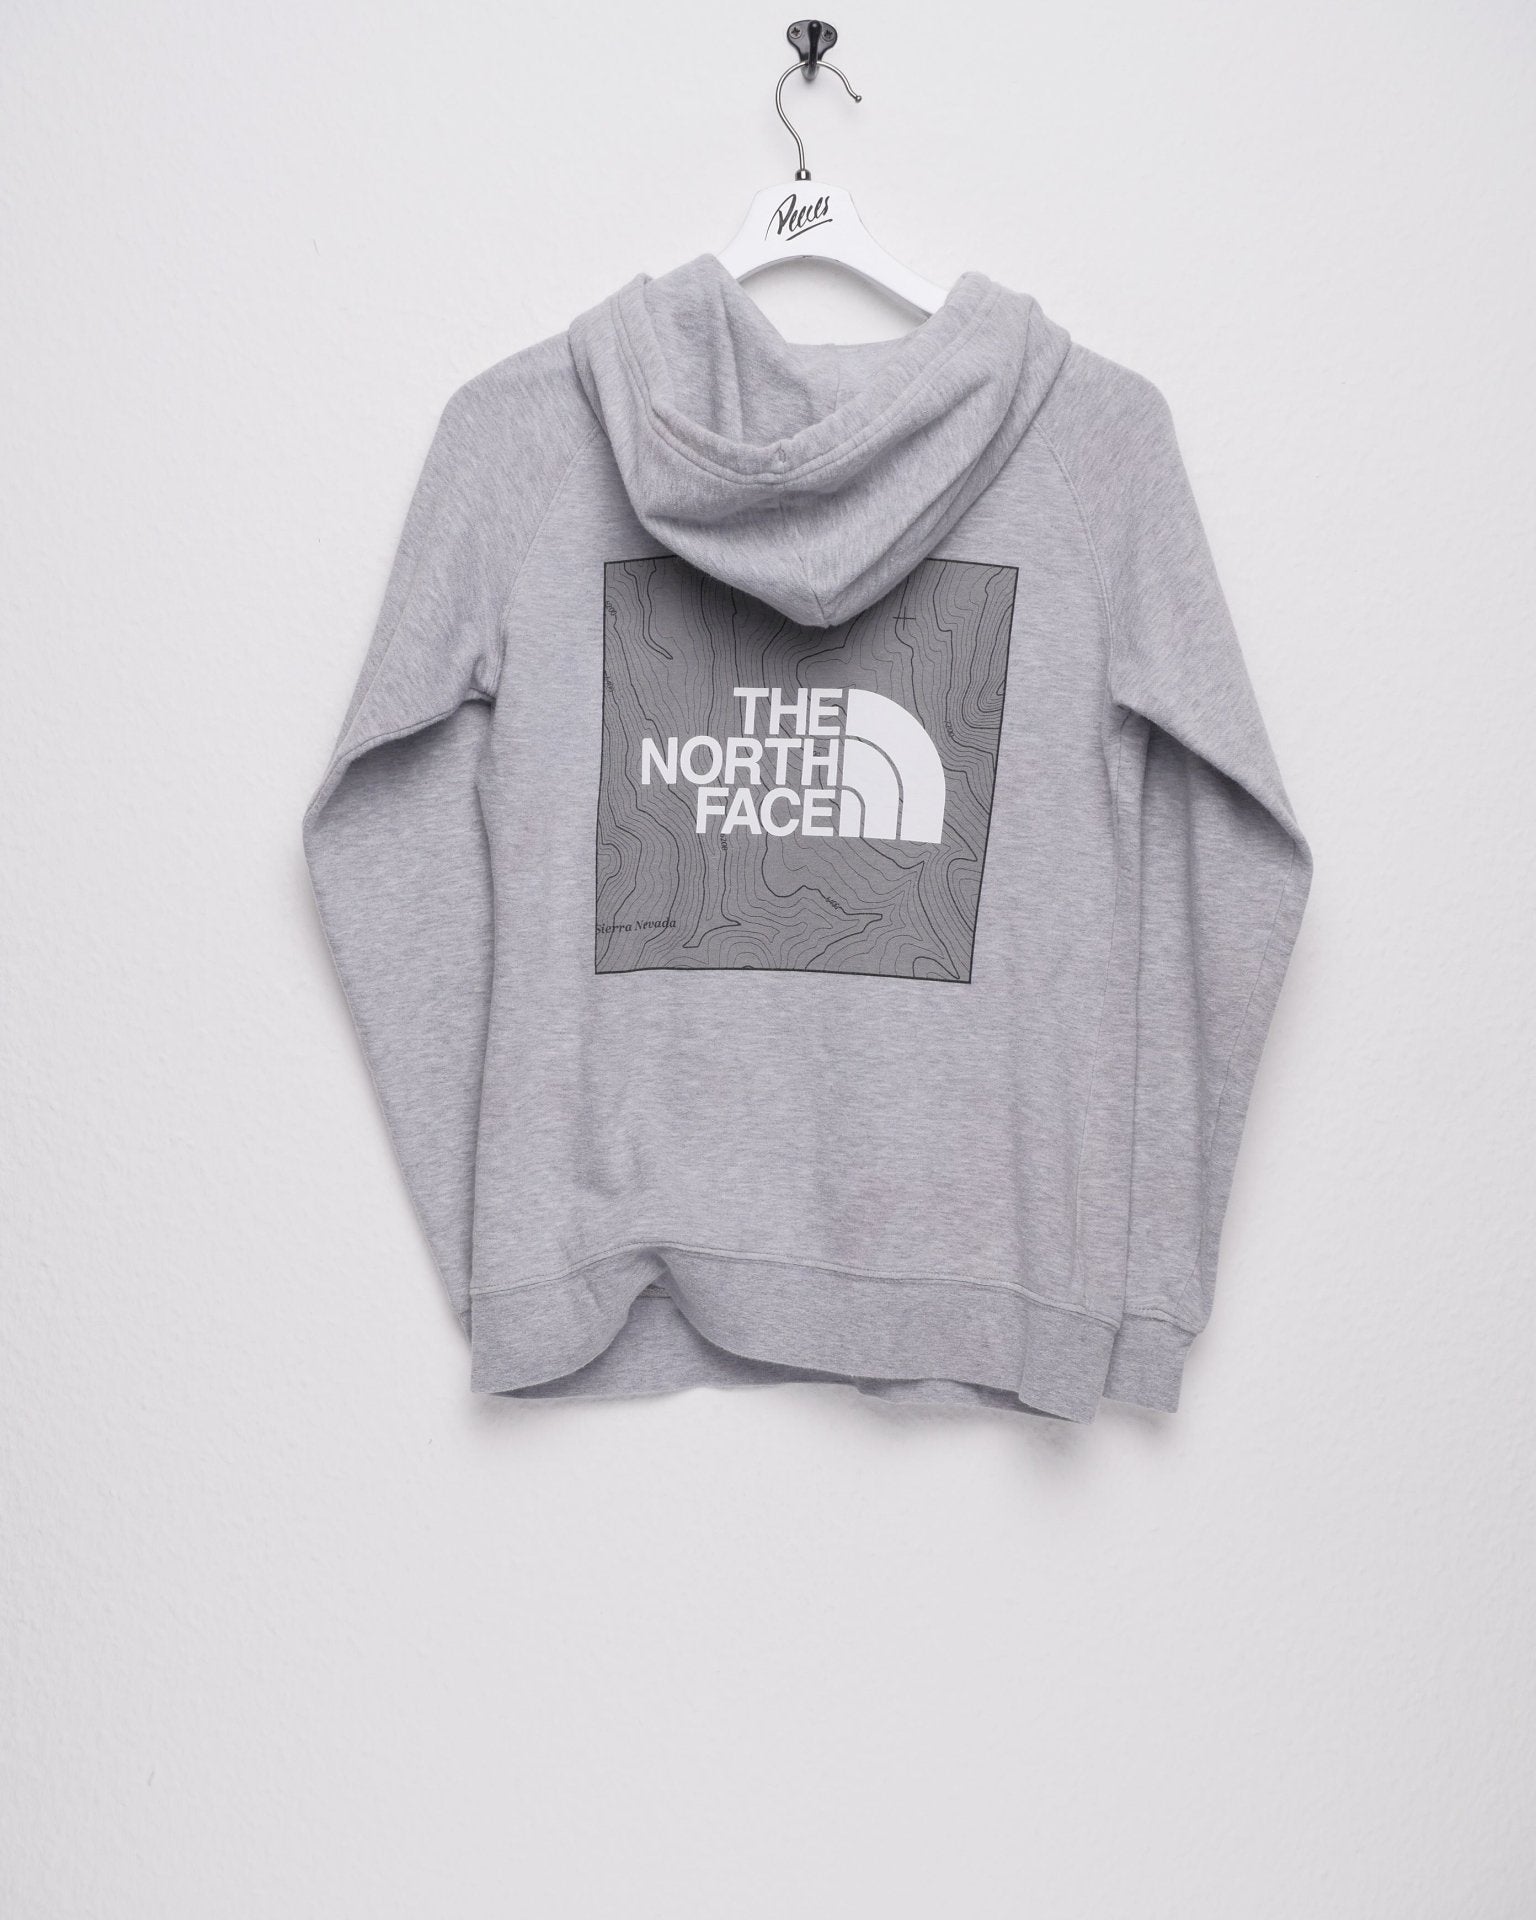 tnf printed Logo grey Hoodie - Peeces